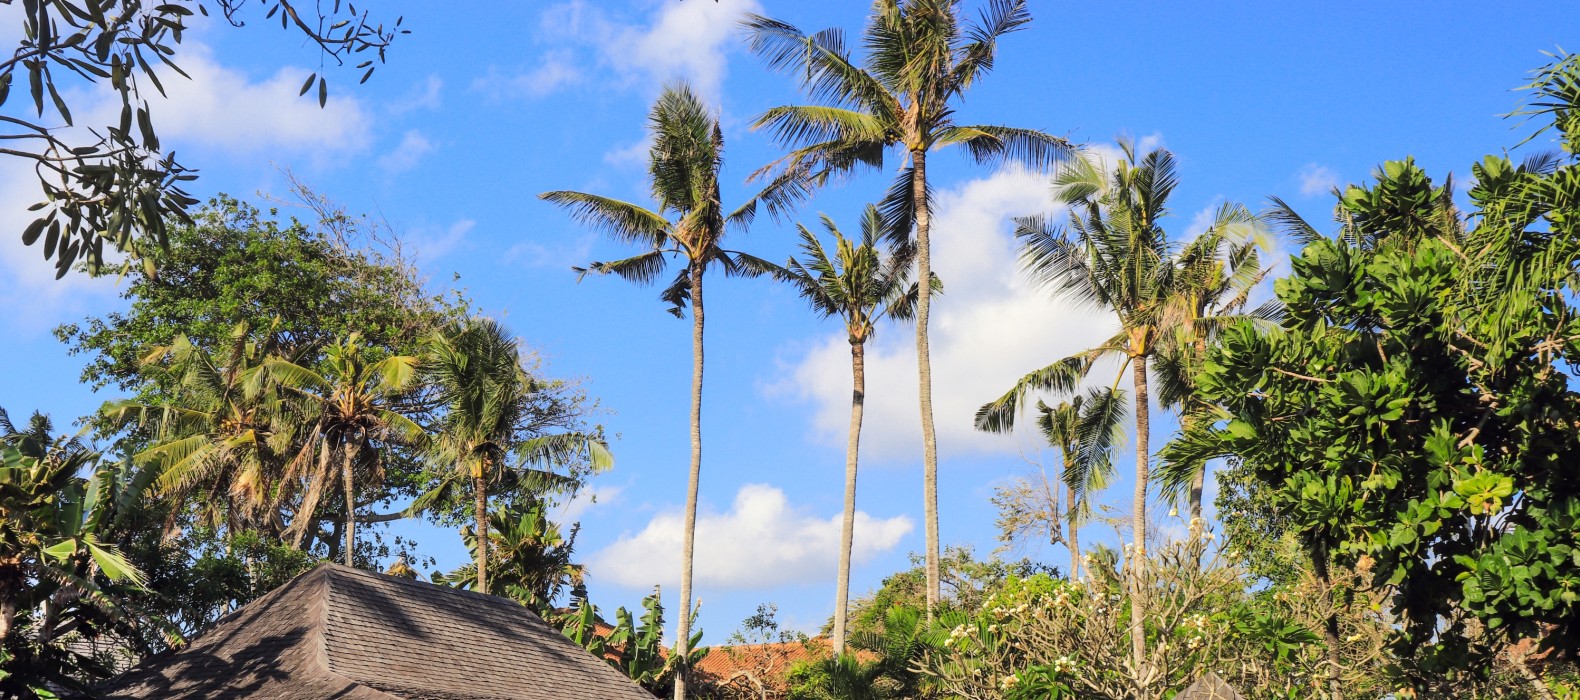 Exterior area of Villa Fortuna in Bali